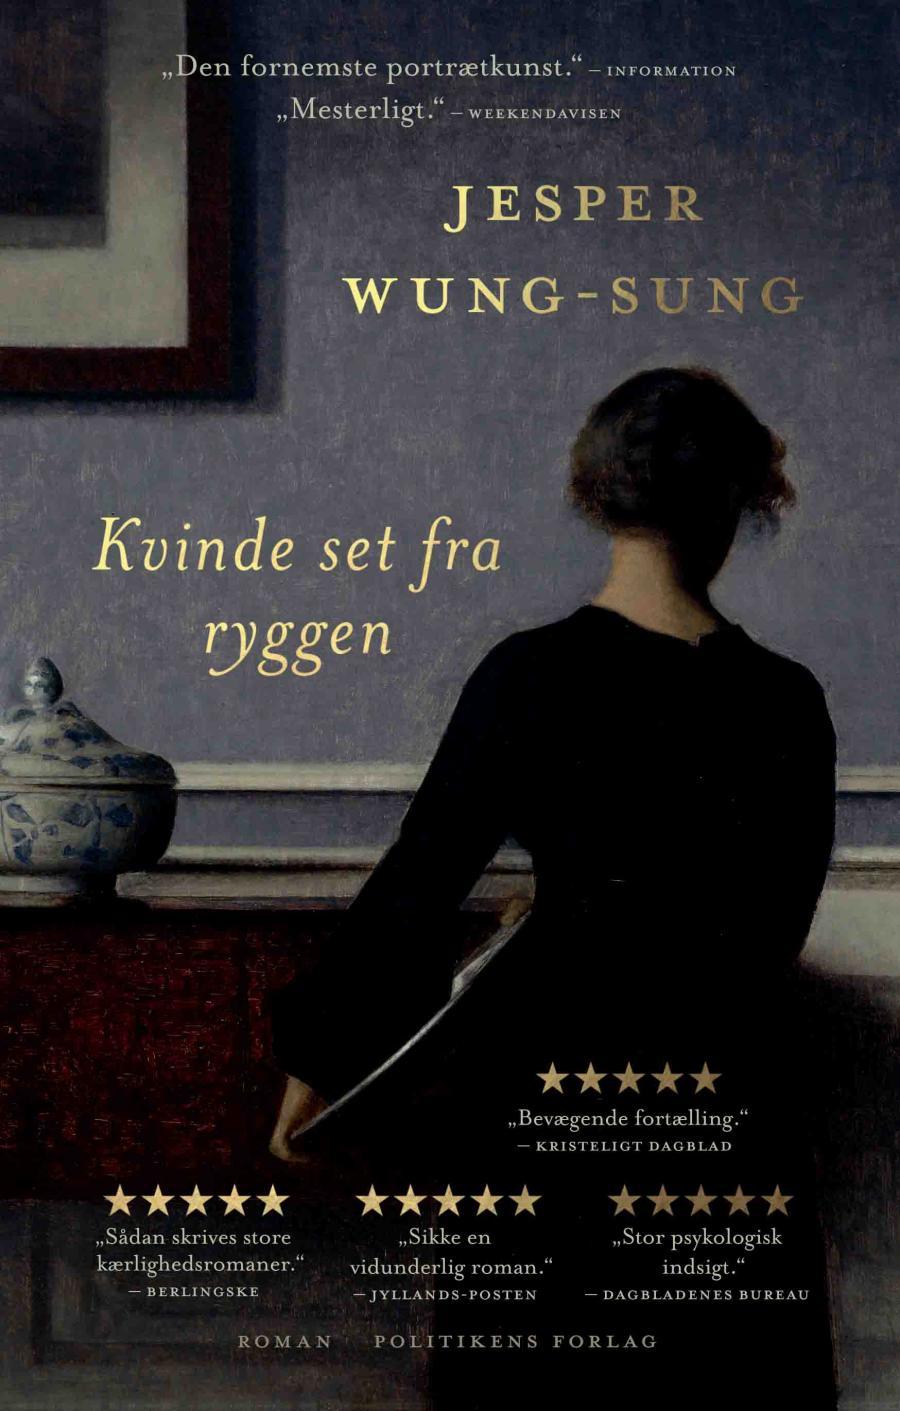 Forside på Jesper Wung-Sungs bog "En kvinde set fra ryggen"